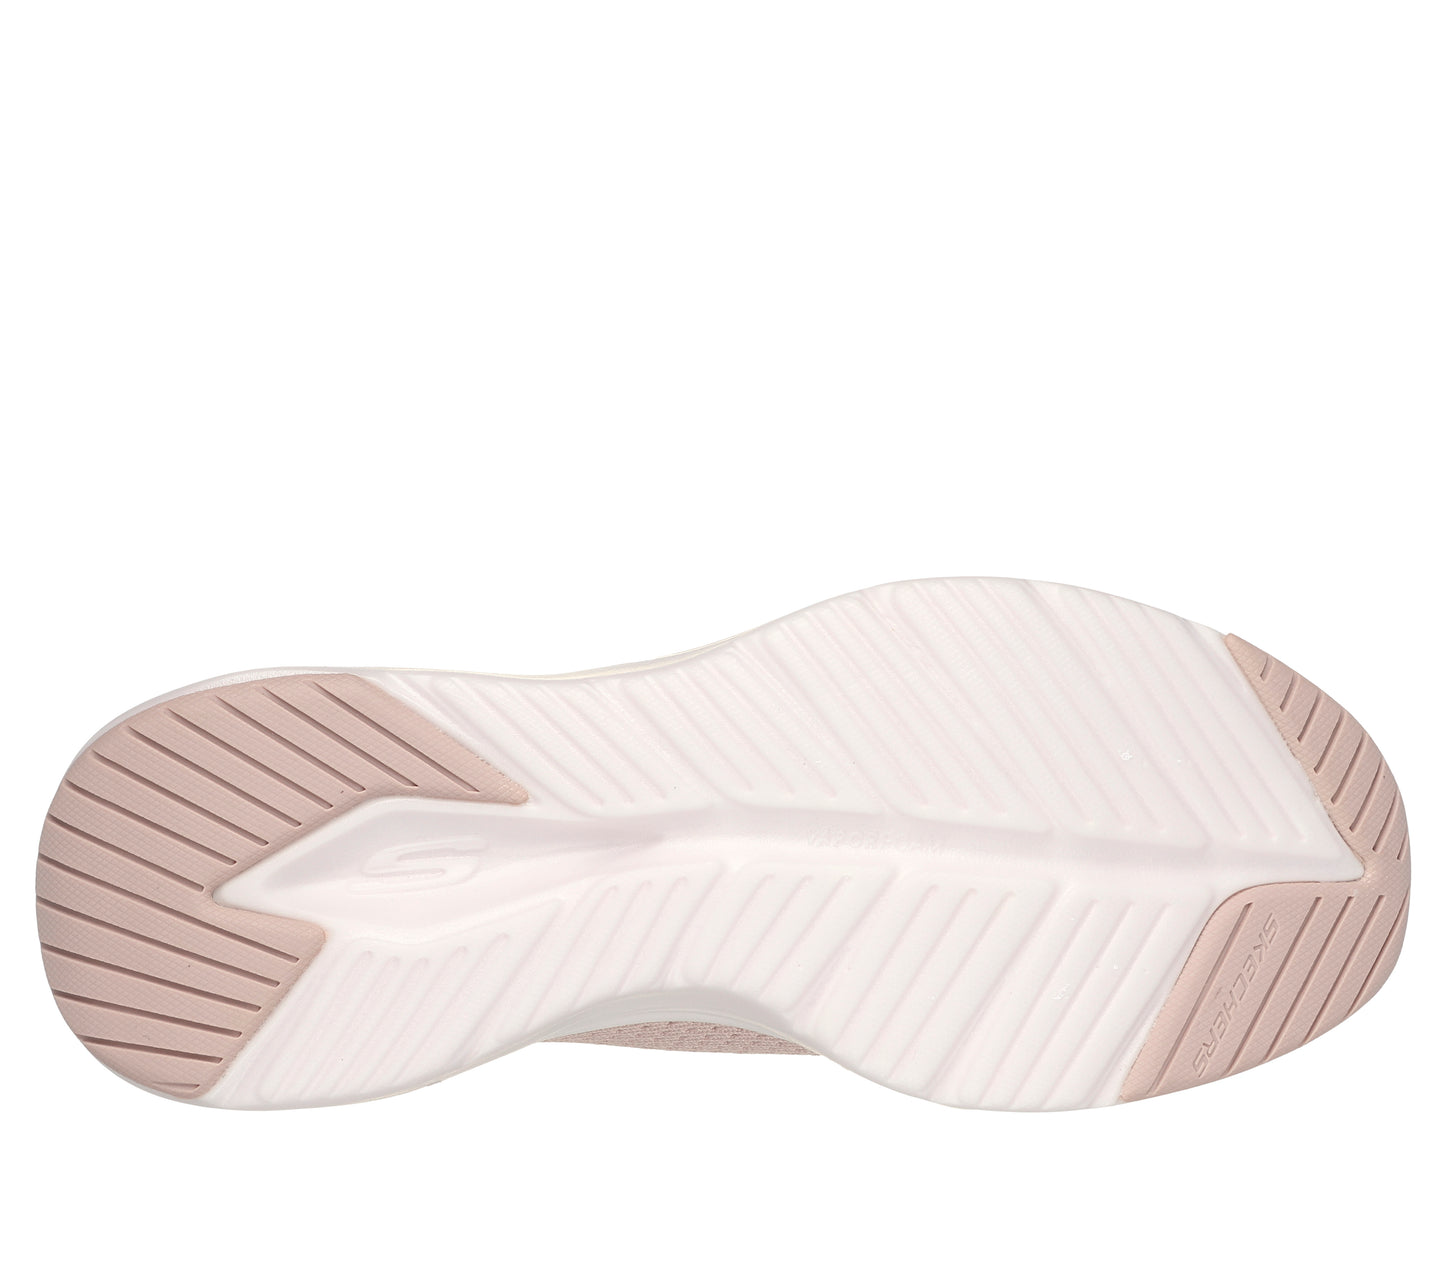 נעלי ספורט לנשים נעלי ספורט לנשים Vapor Foam - True Classic בצבע ורוד ולבן